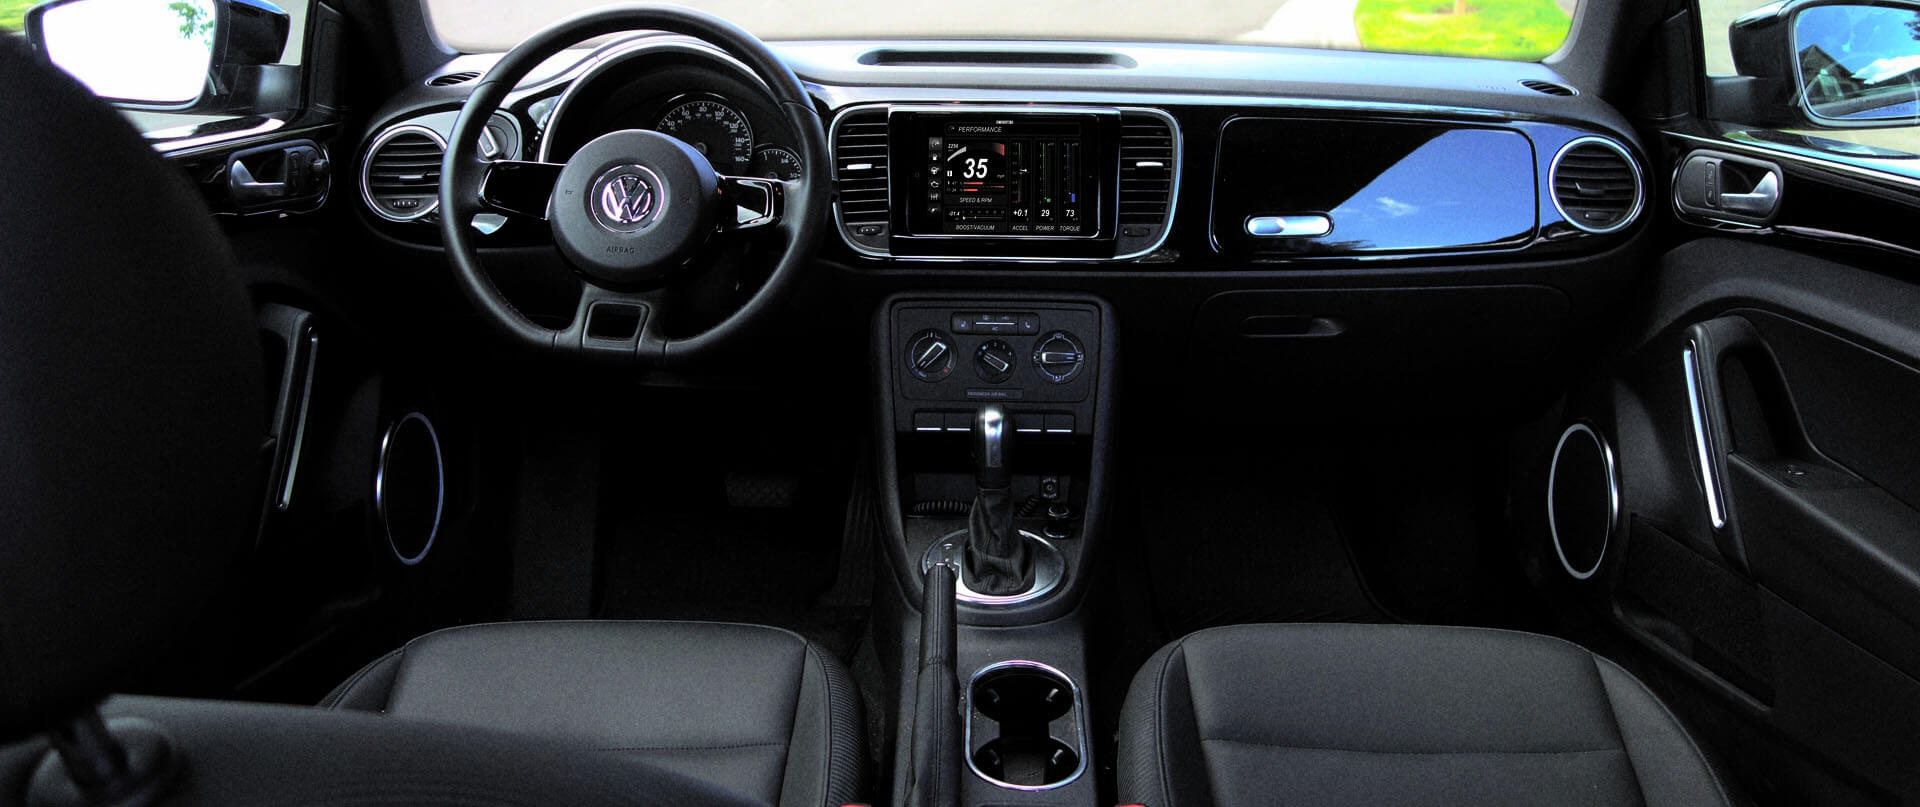 Volkswagen Cc dash kit